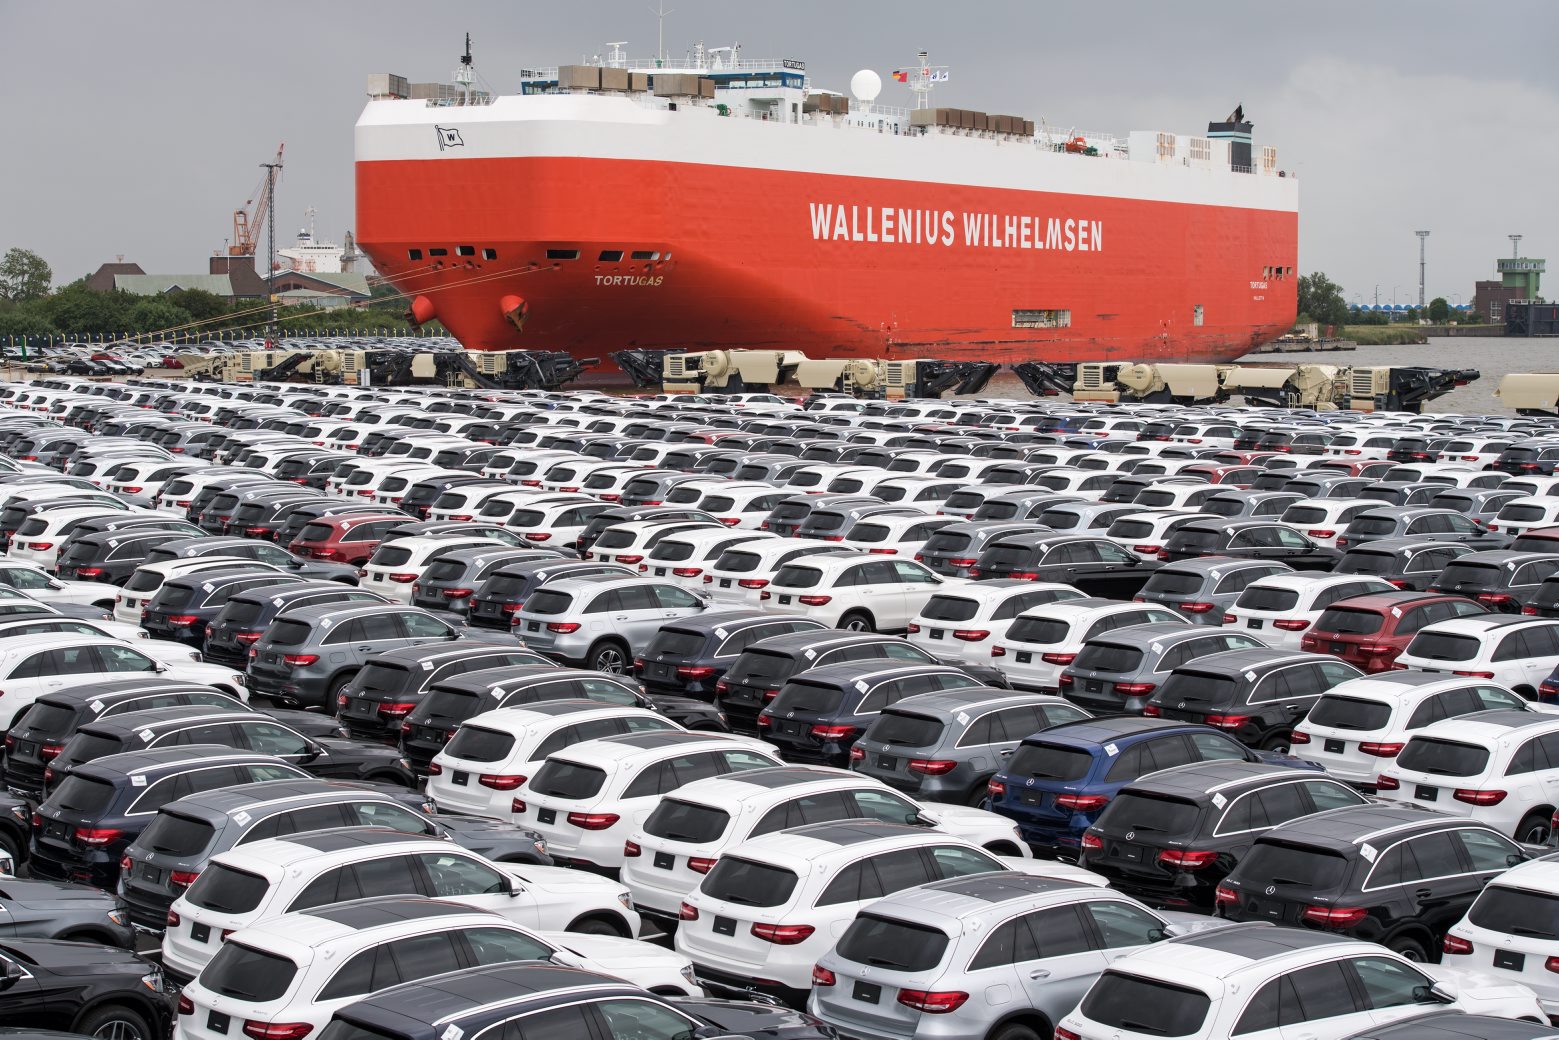 ARCHIV - 12.06.2017, Bremen, Bremerhaven: Neuwagen von Mercedes-Benz stehen am auf einem Autoterminal zur Verschiffung bereit. Der weltweite Handelsstreit um die Sonderzölle von Präsident Trump auf Importe in die USA eskaliert weiter. (zu dpa «Trump schlägt im Handelsstreit auf EU ein: So schlimm wie China» vom 01.07.2018) Foto: Ingo Wagner/dpa +++ dpa-Bildfunk +++ (KEYSTONE/DPA/Ingo Wagner) DEUTSCHLAND MERCEDES-BENZ - EXPORT